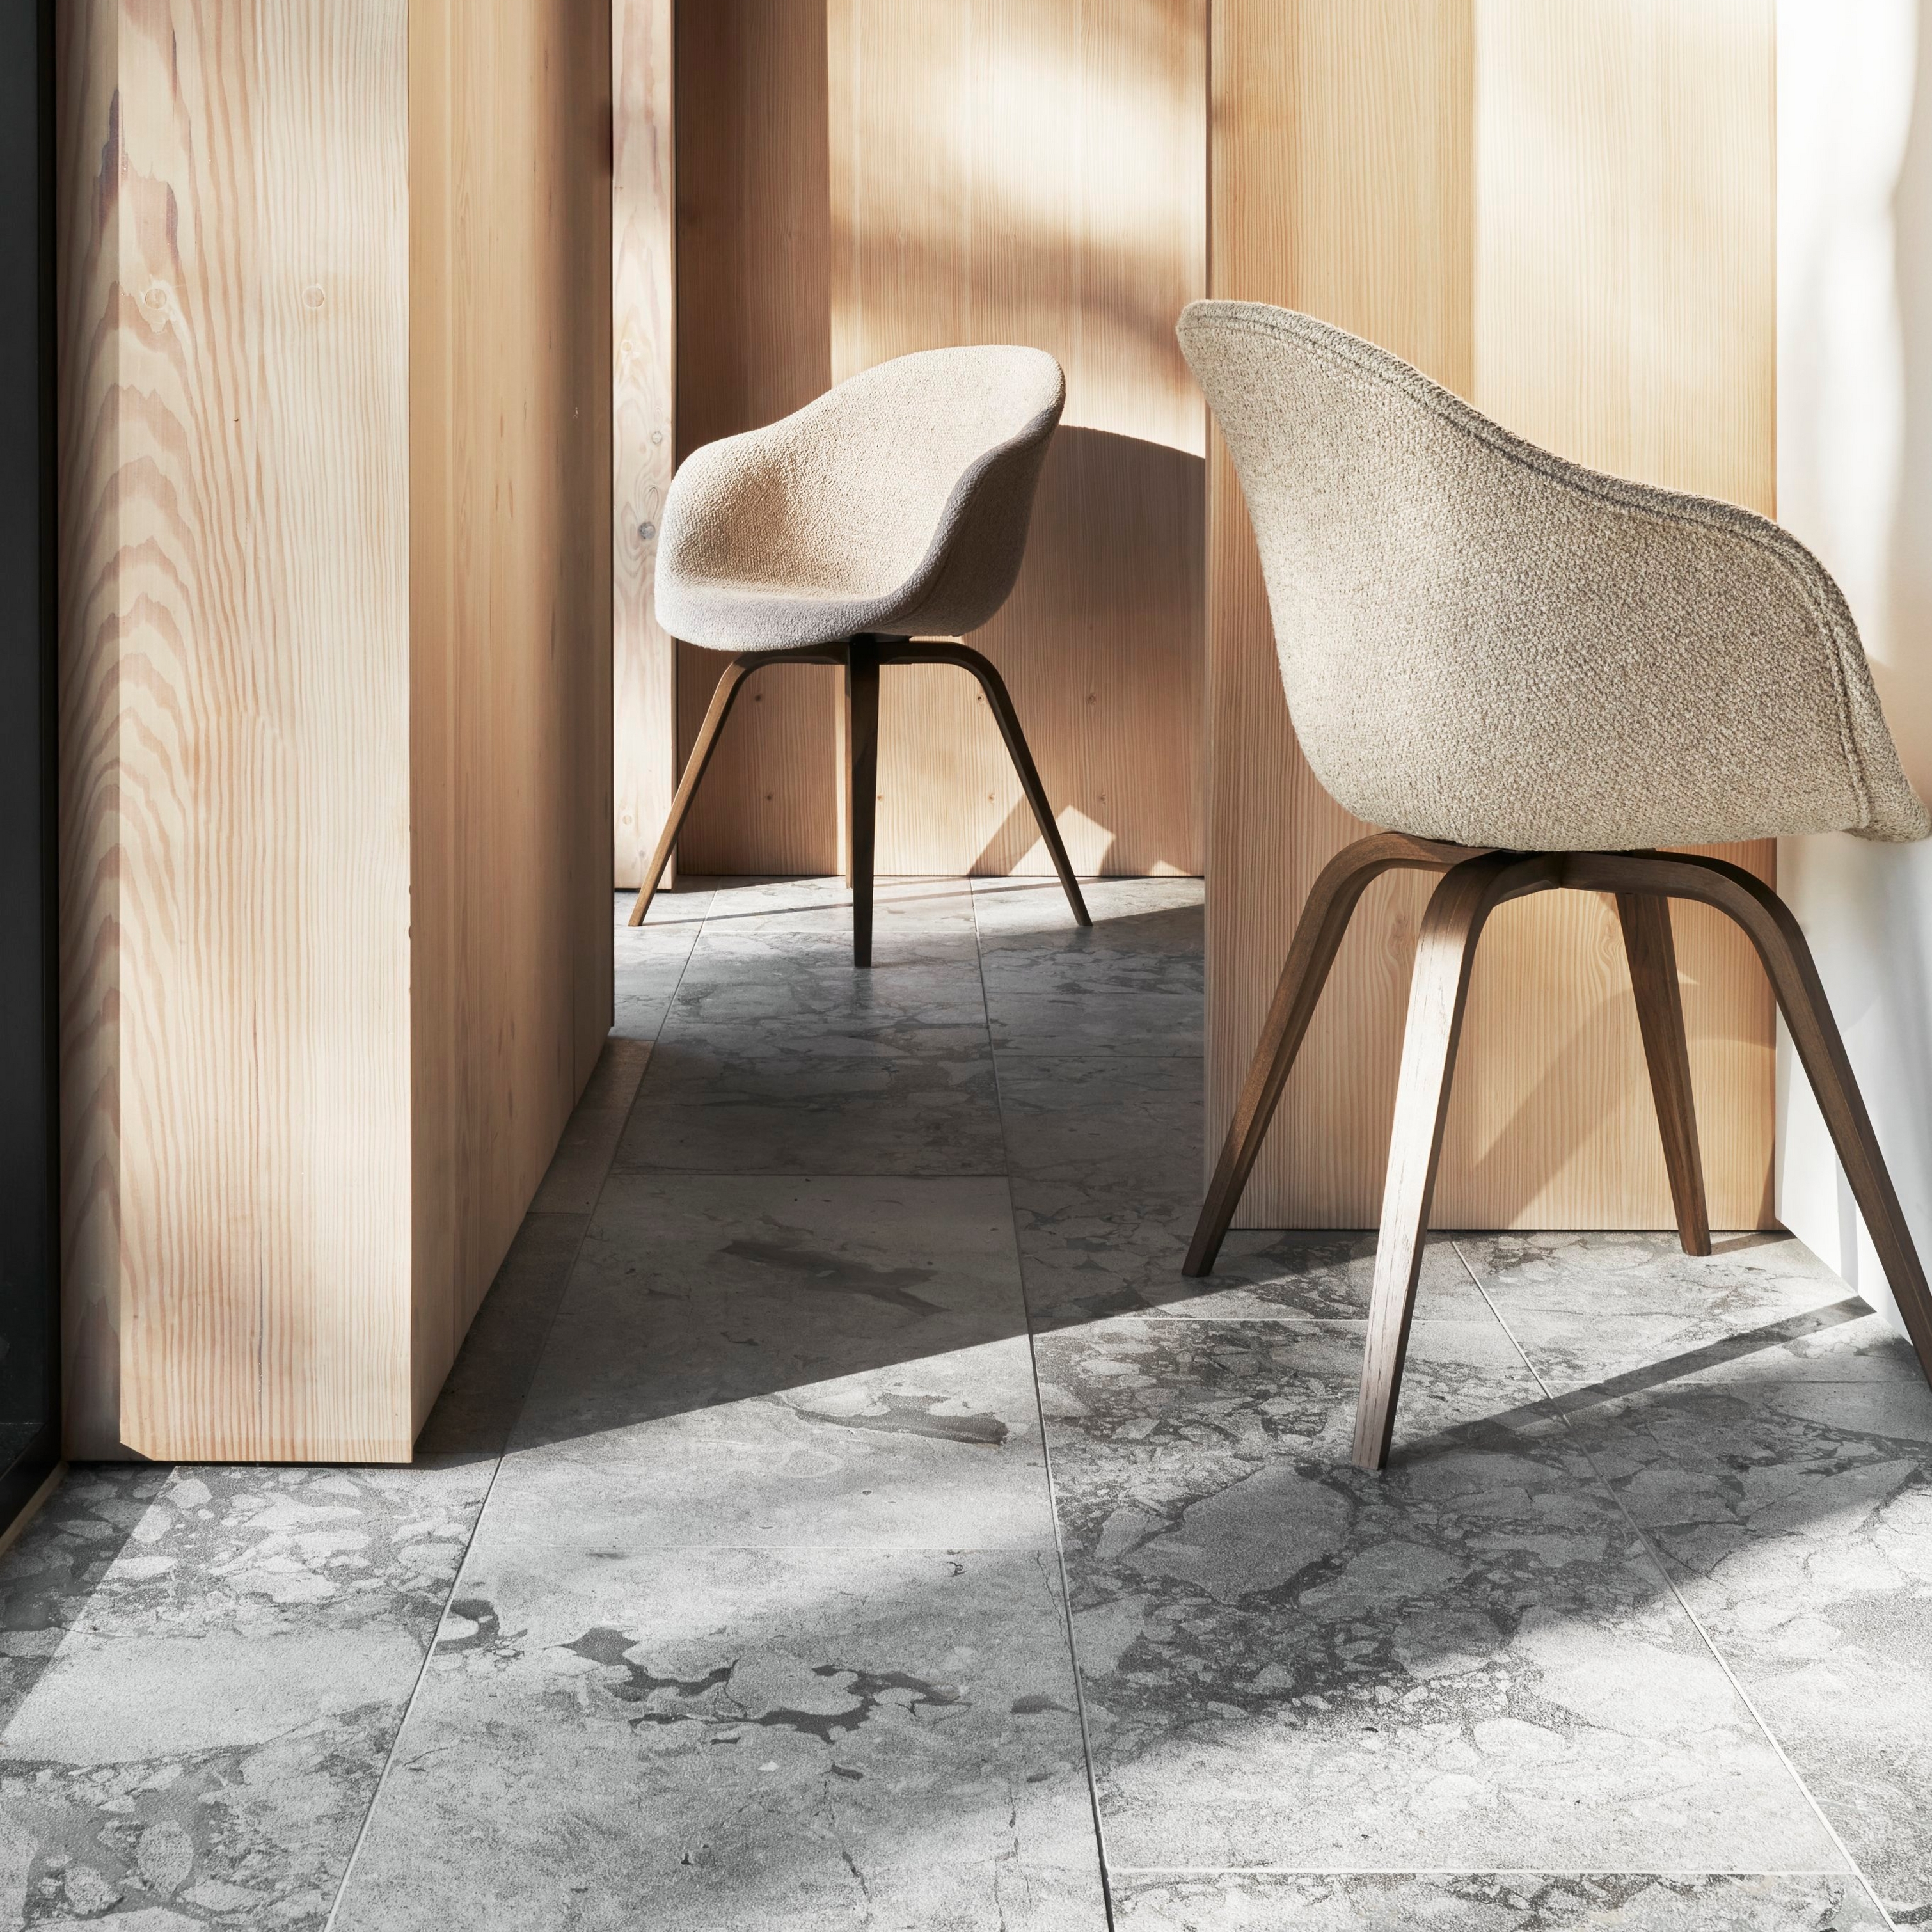 Aurinkoinen sisustus, jossa on kaksi Hauge-tuolia, puuseinät ja marmorilattia.